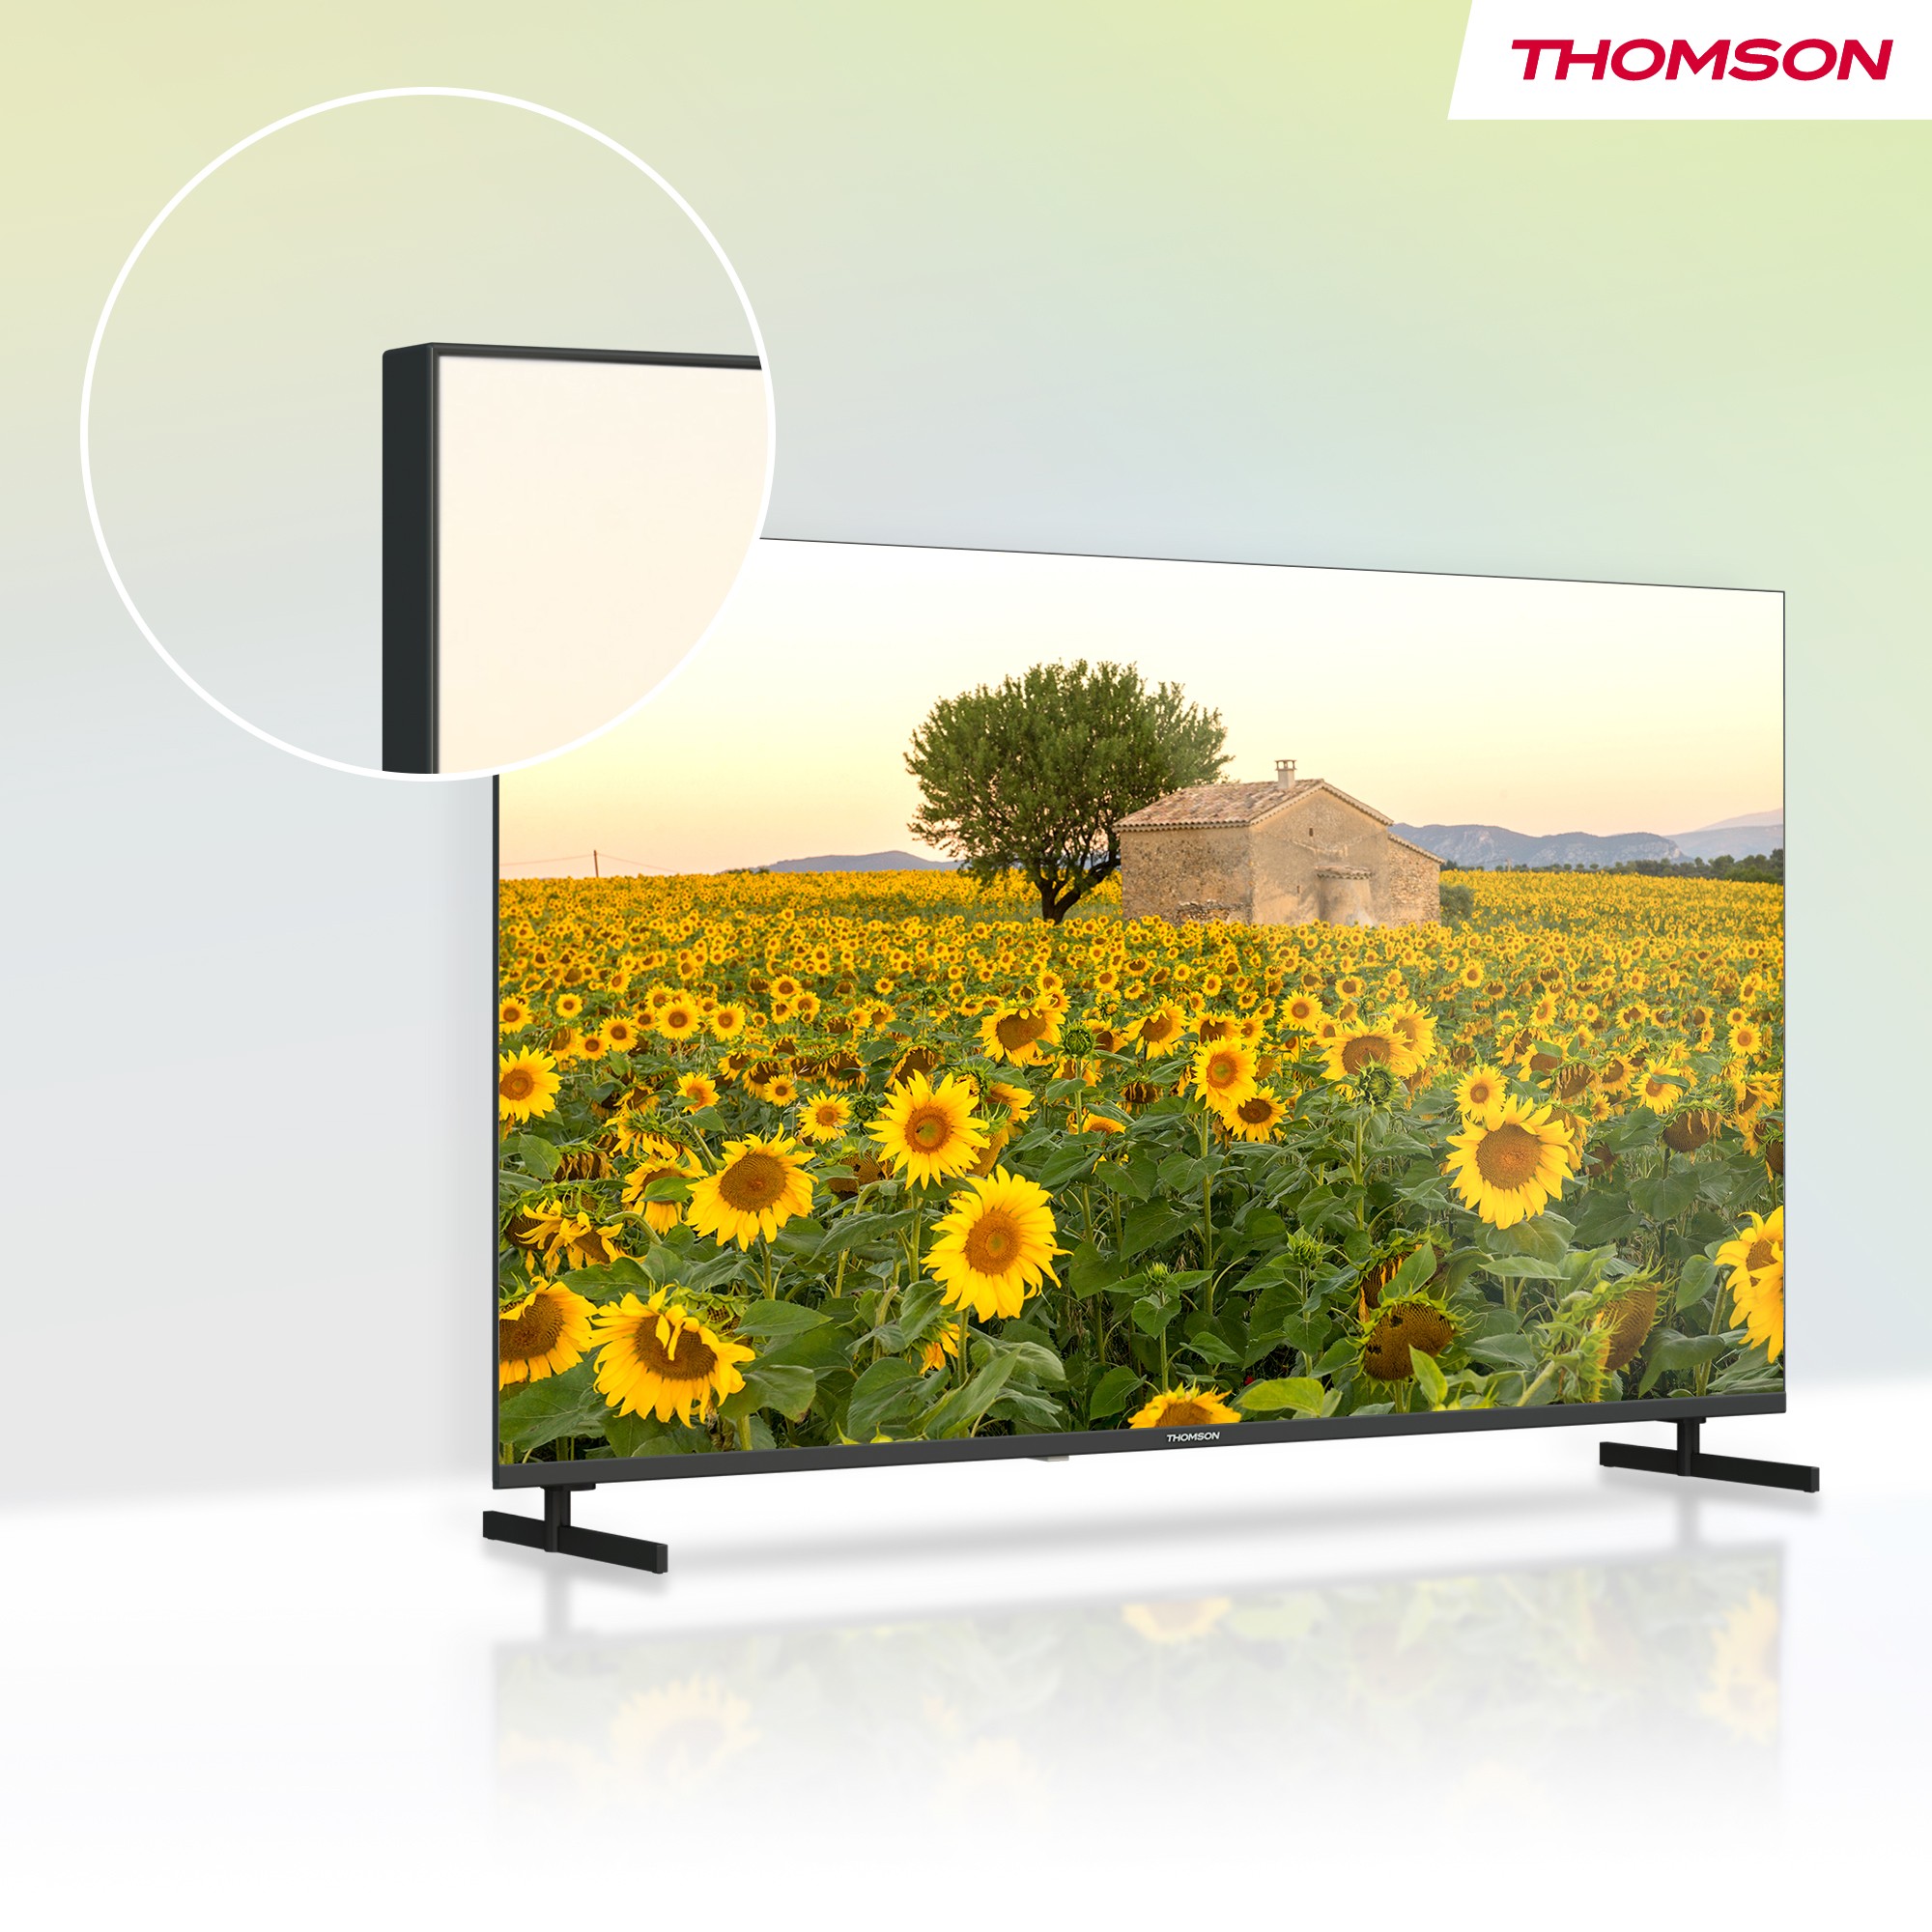 THOMSON TV LED 80 cm 50 Hz HDTV 32" - 32HA2S13